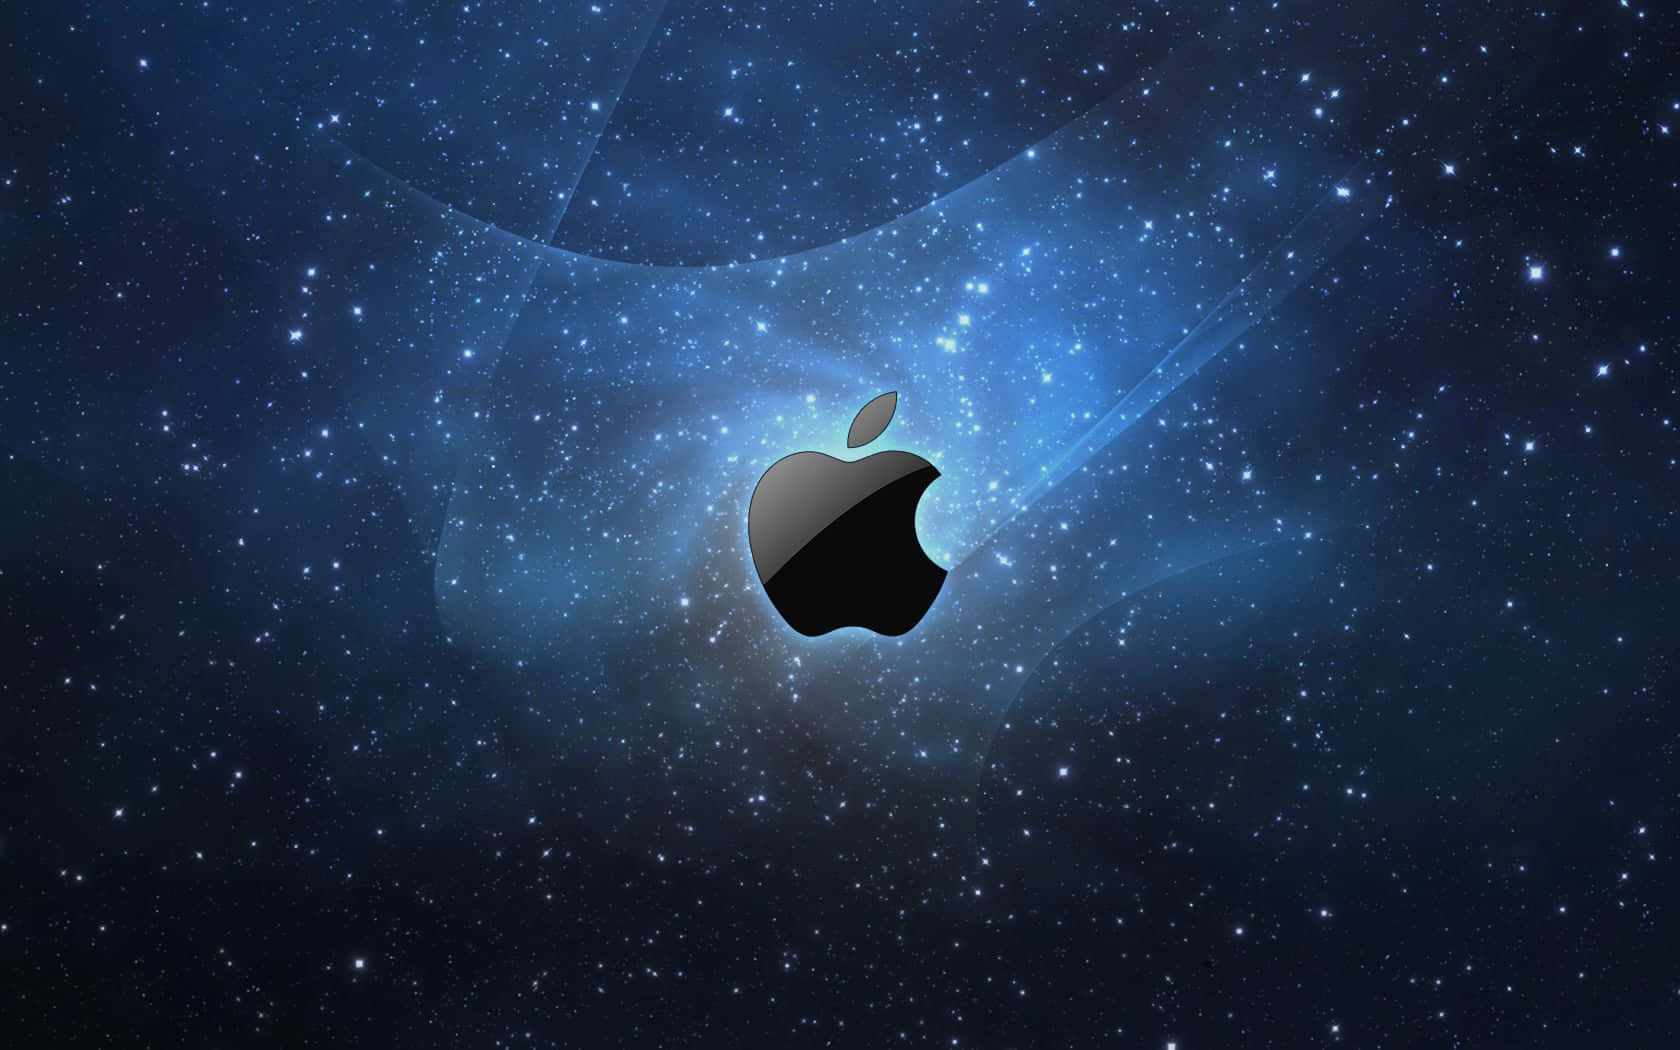 Logode Mac Genial Con Estrellas En El Espacio. Fondo de pantalla